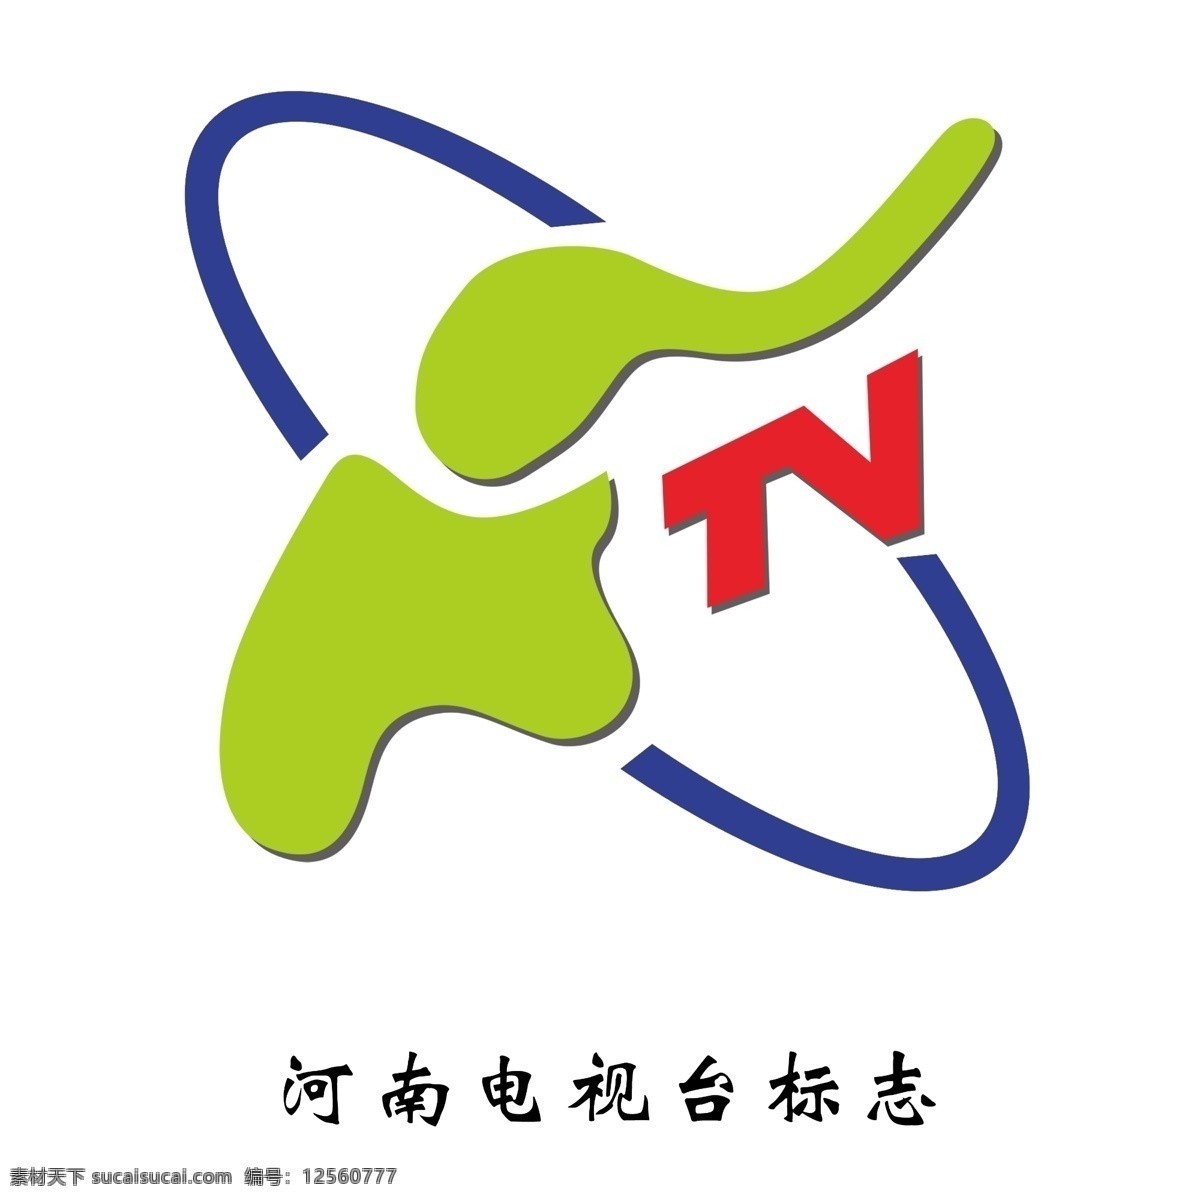 河南电视台 标志 河南 电视台 电视台标志 标志设计 广告设计模板 源文件